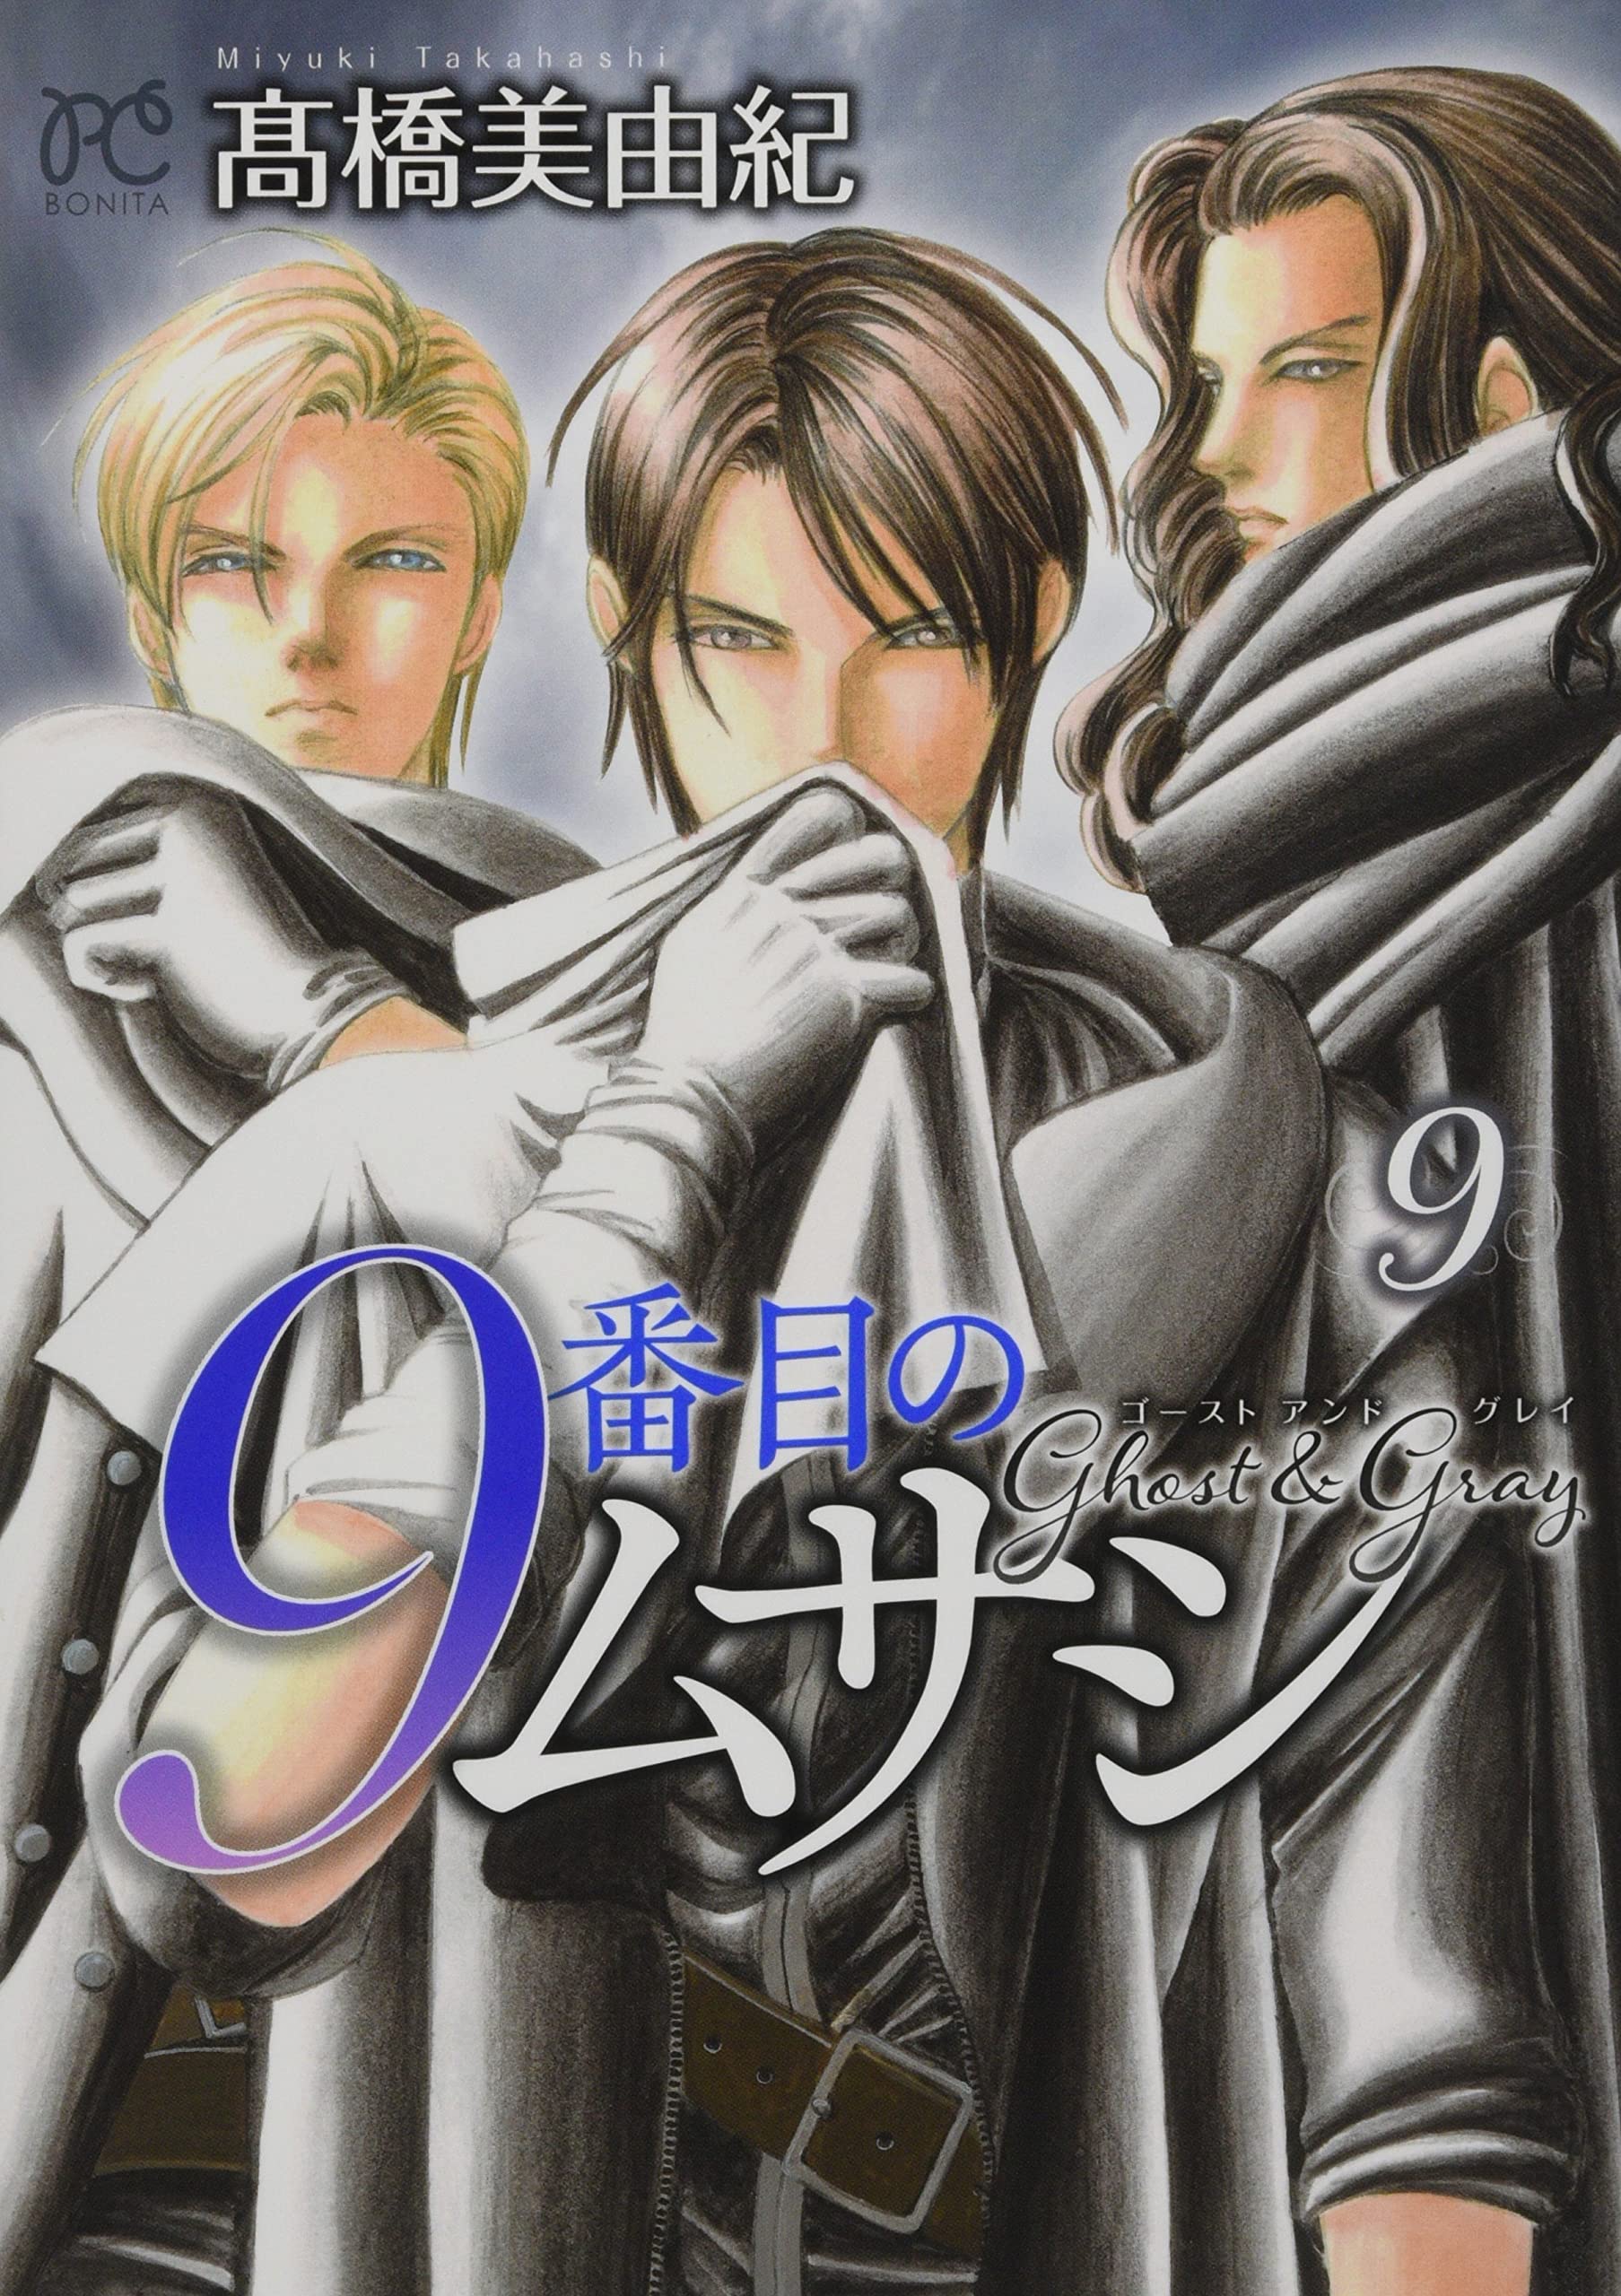 Musashi #9 (9-banme no Musashi): Ghost and Gray 9 – Japanese Book 